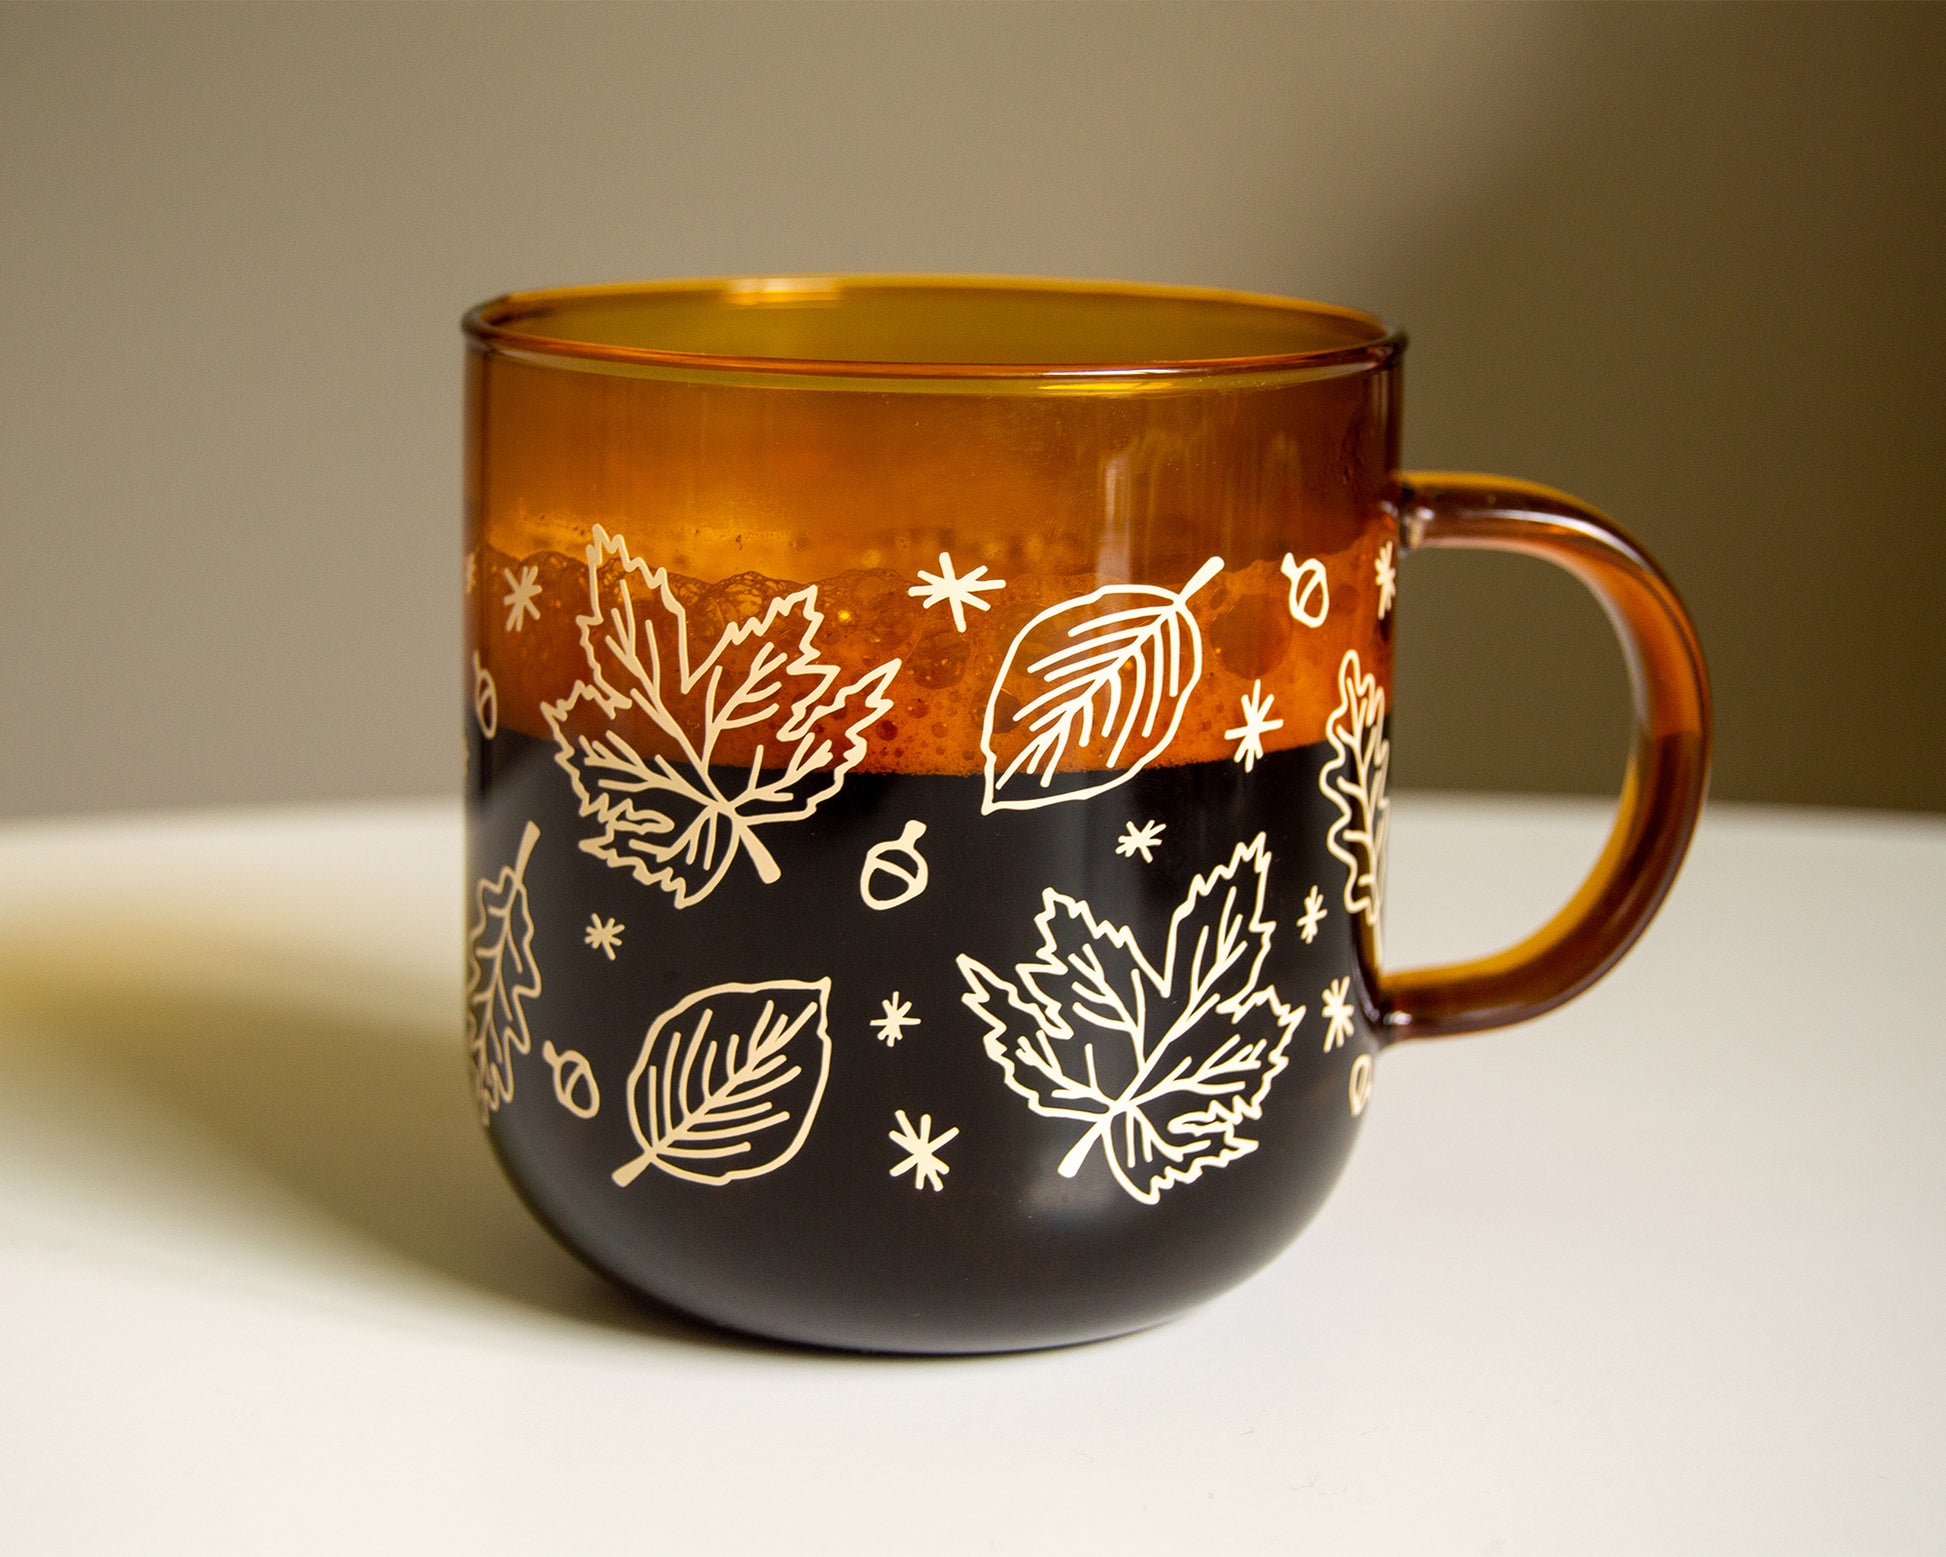 Glass Mug Personalized Glass Coffee Mugs Fall Mug Holiday Mugs